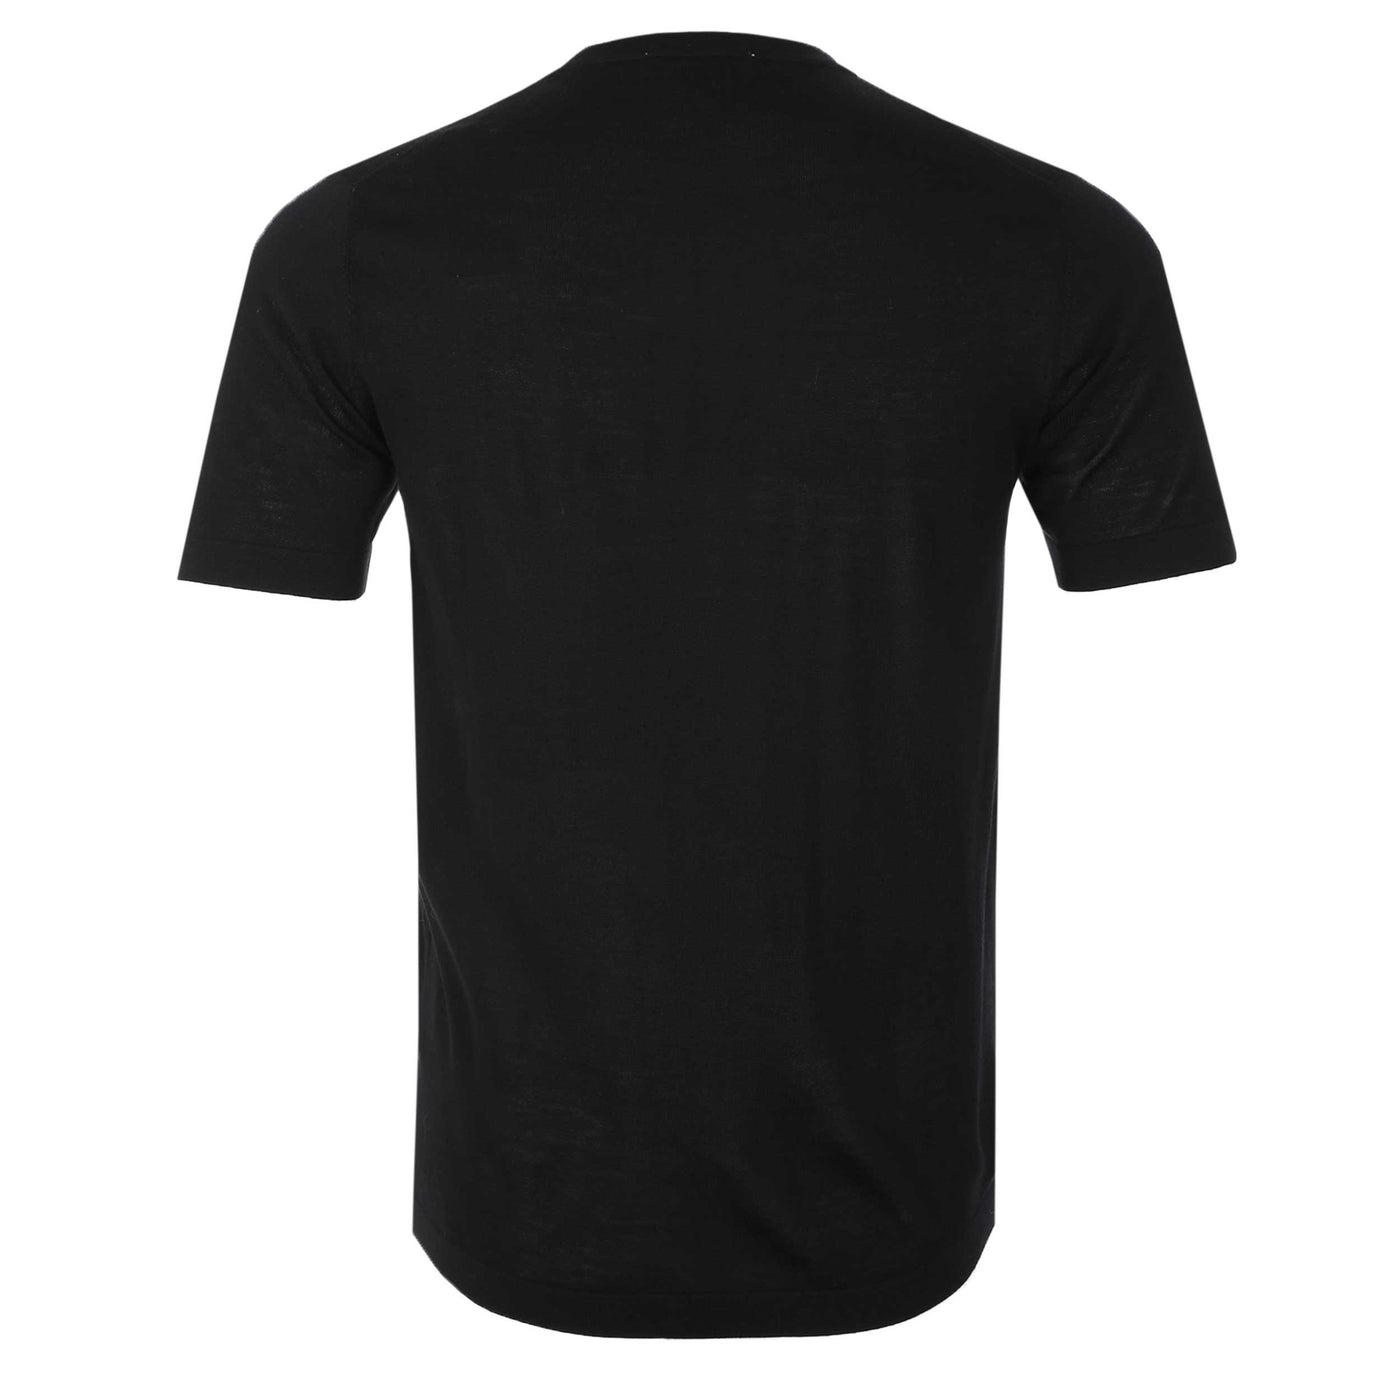 Thomas Maine Merino T-Shirt in Black Back